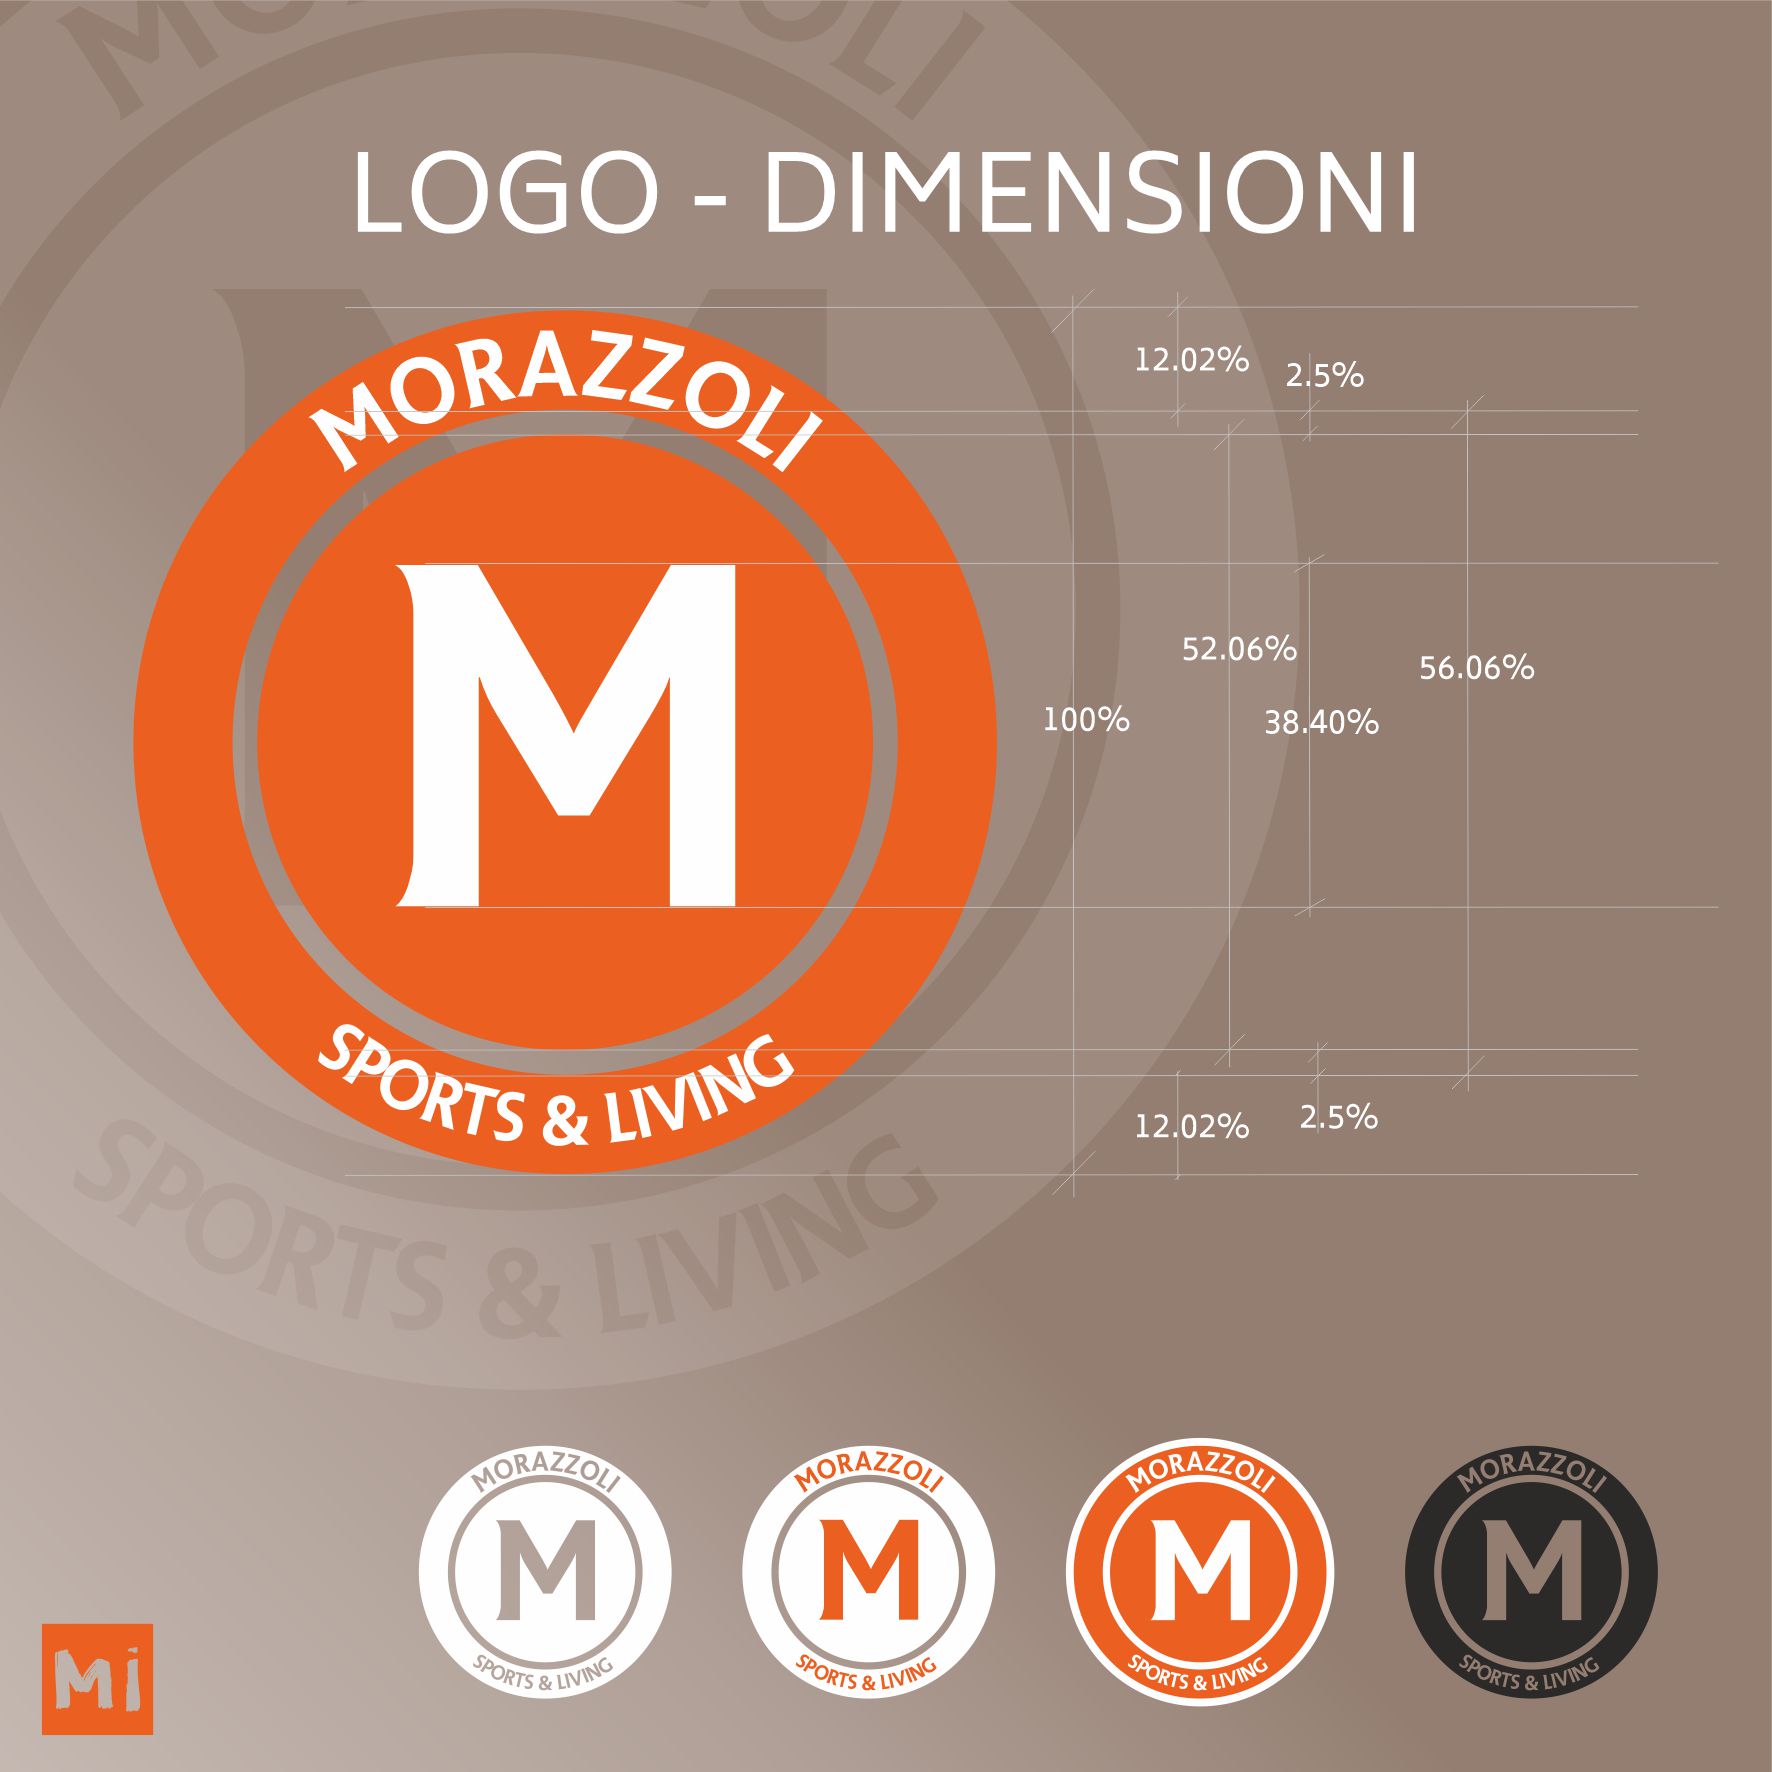 Morazzoli Sporting Club - Logo | MASTROiNCHIOSTRO